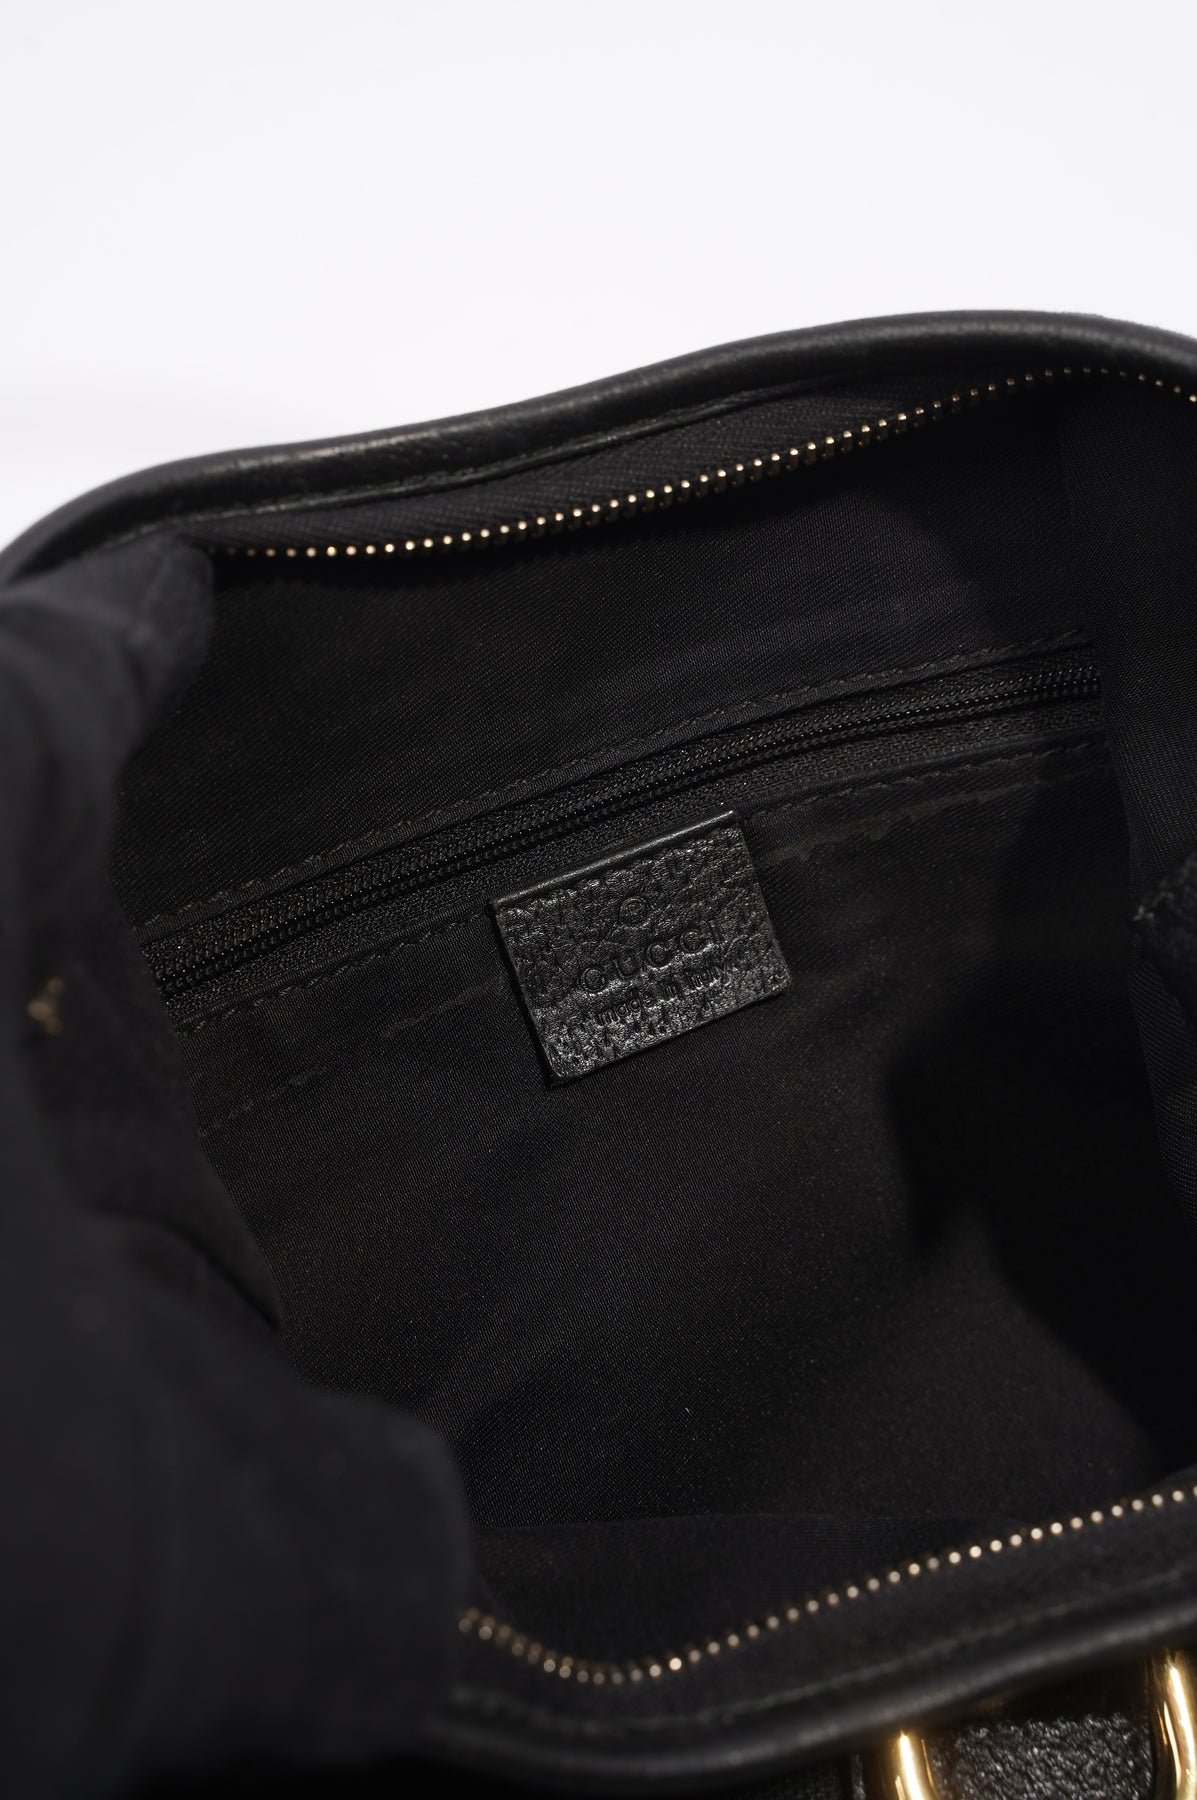 Louis Vuitton Black Leather Booties Sz 40 – Designer Resale Collective